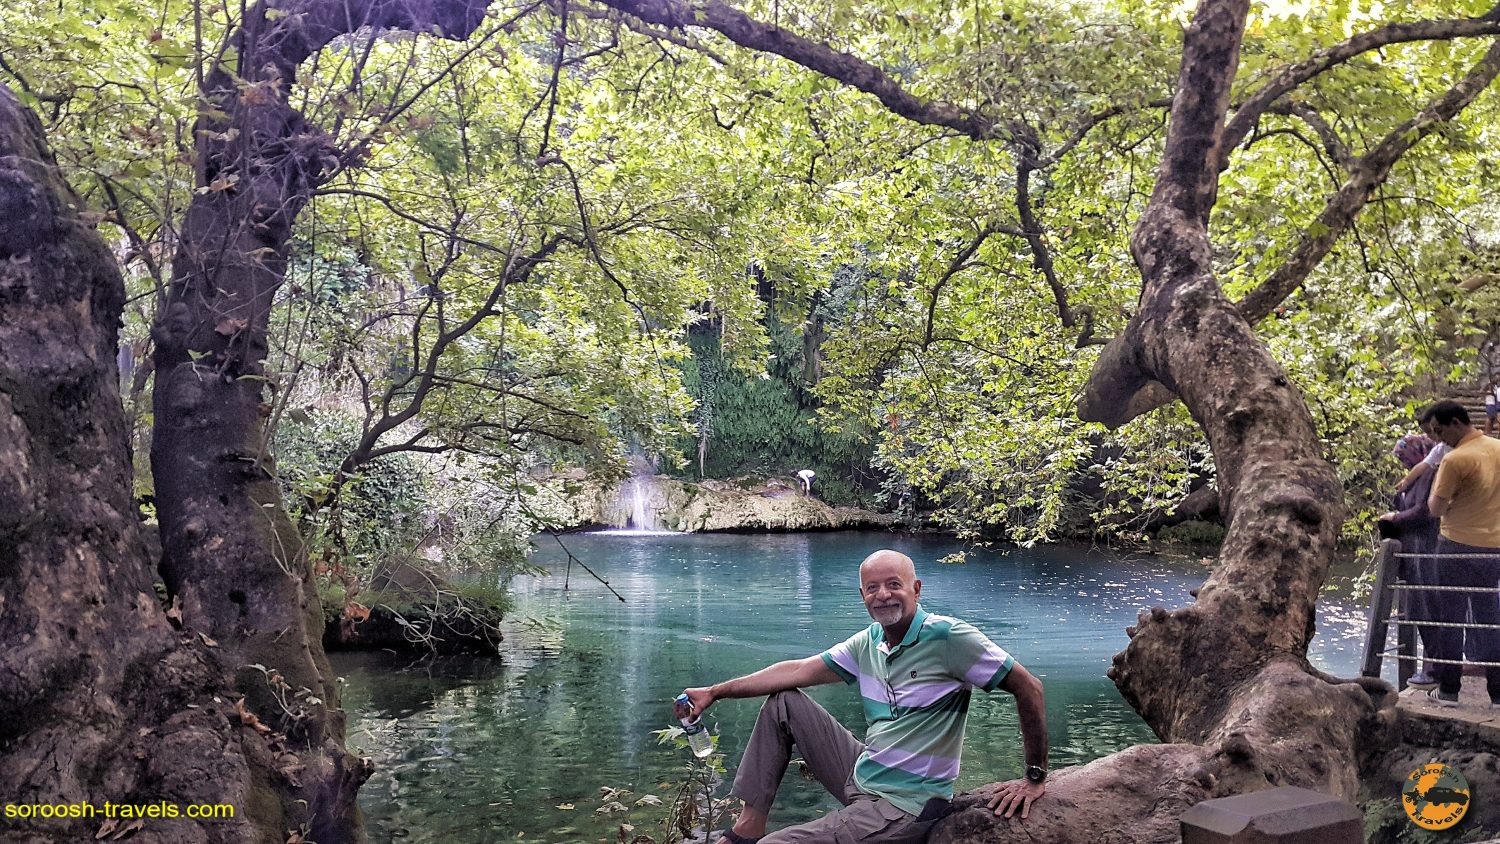 آبشار کورشونلو در حوالی آنتالیا، ترکیه - تابستان 1398 2019